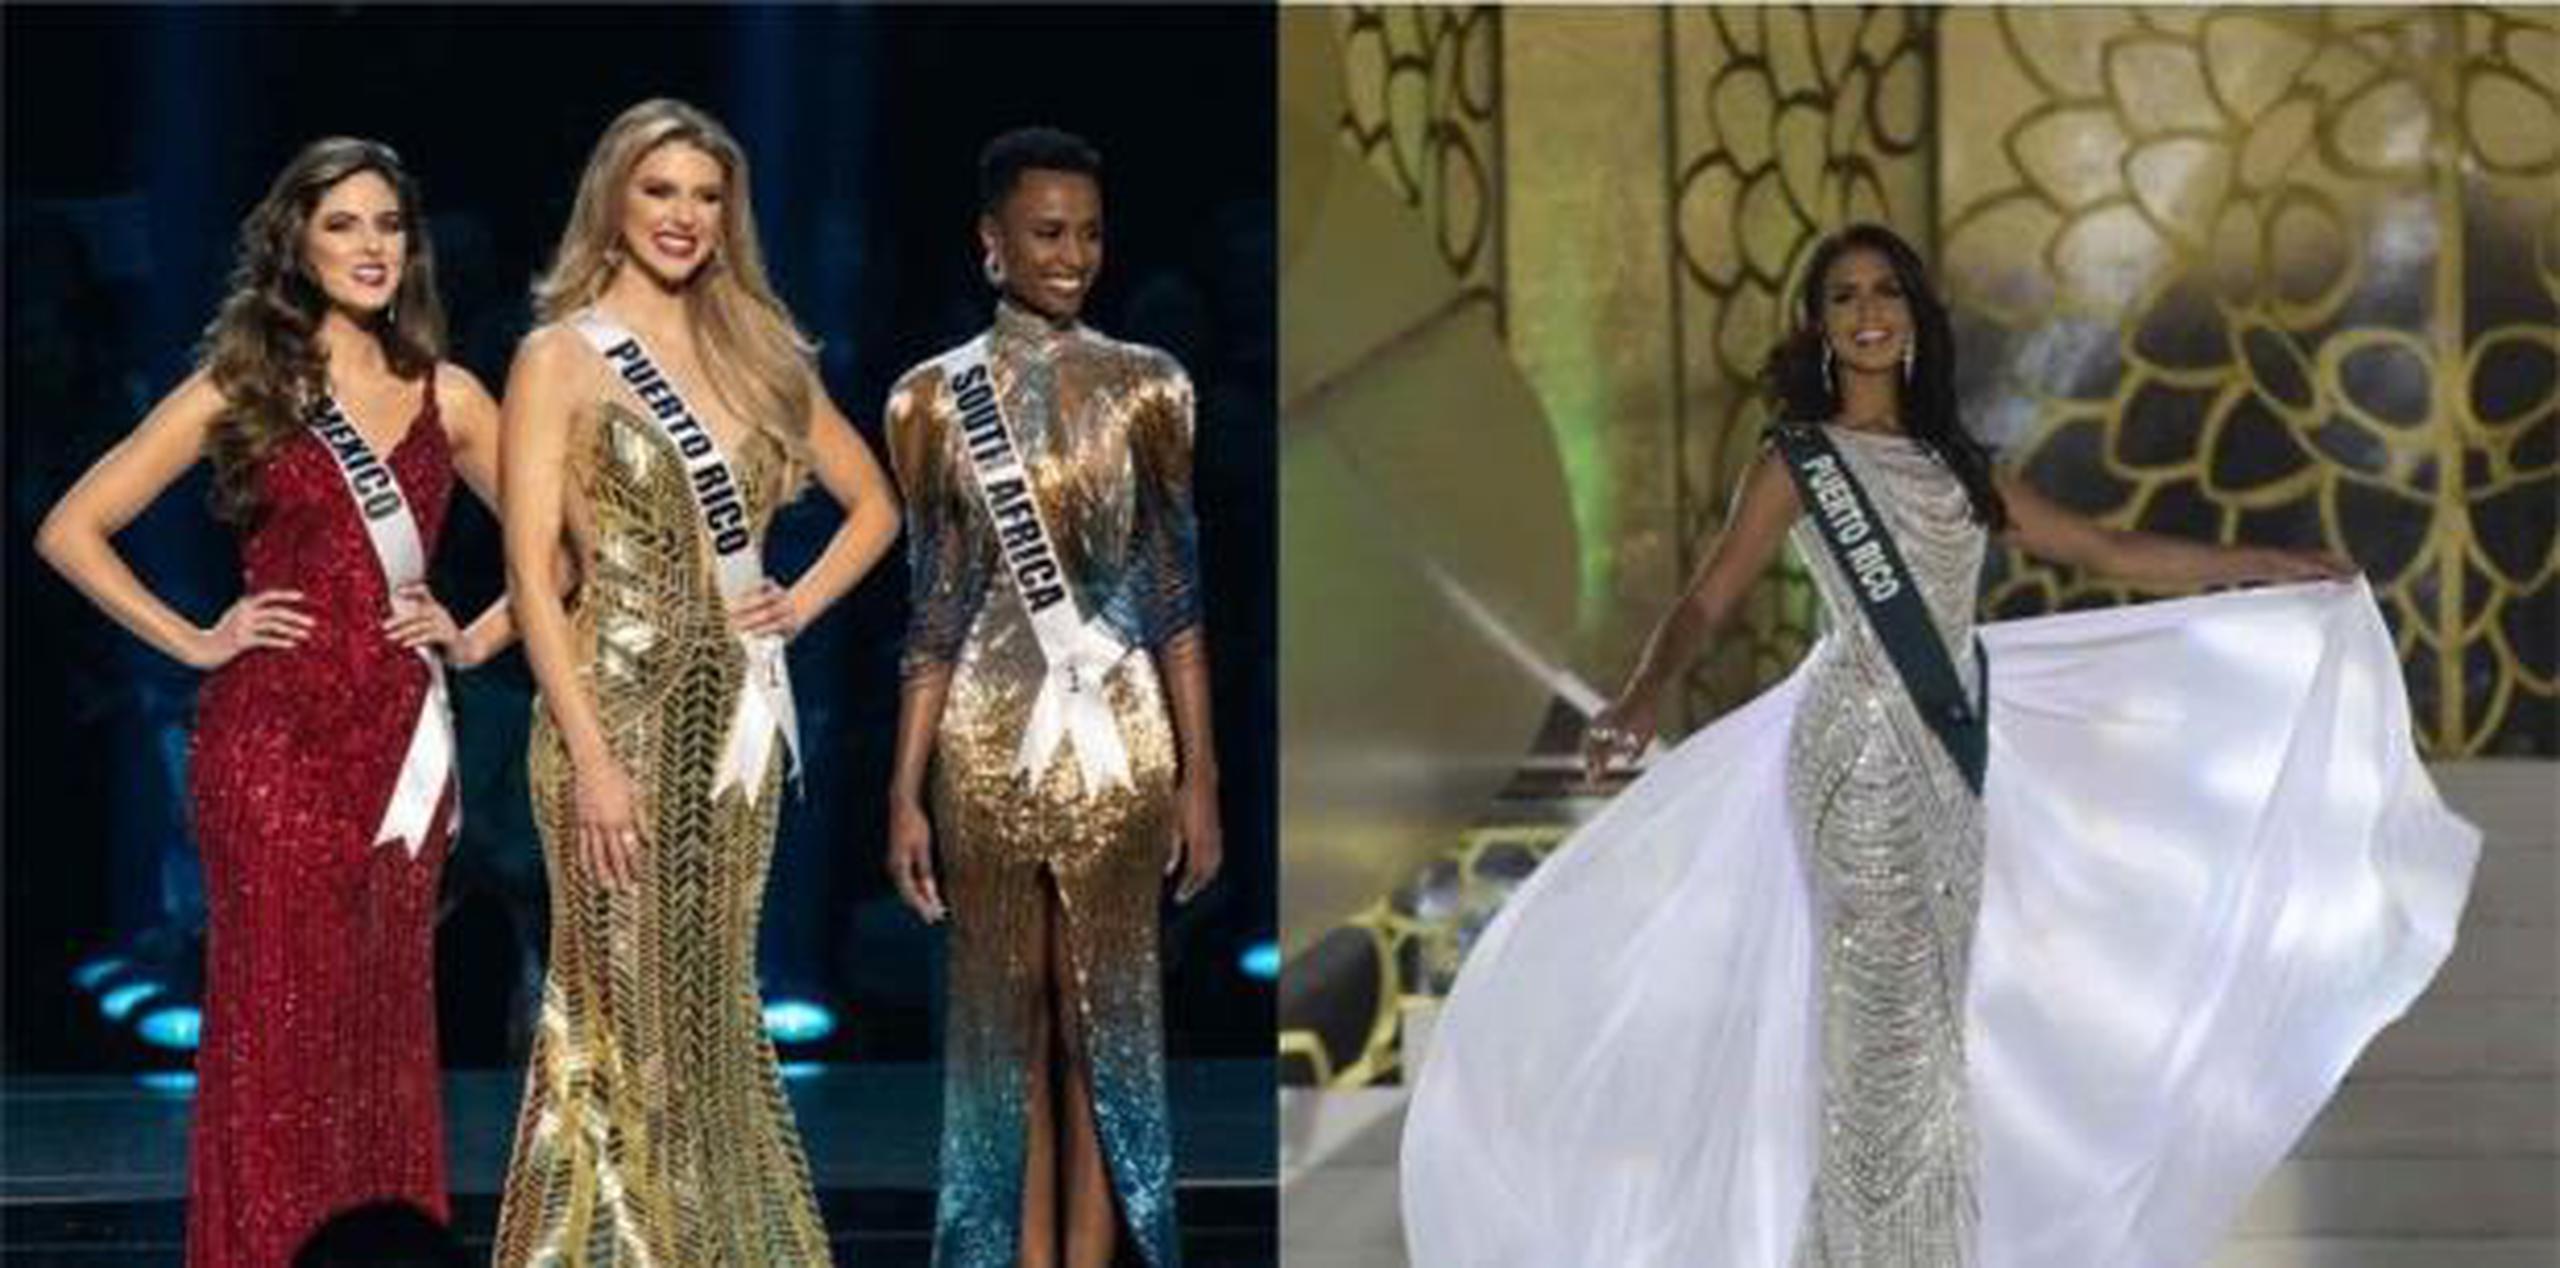 Madison Anderson quedó primera finalista en Miss Universe, mientras que Nellys Pimentel se alzó con la corona de Miss Earth. (Montaje)